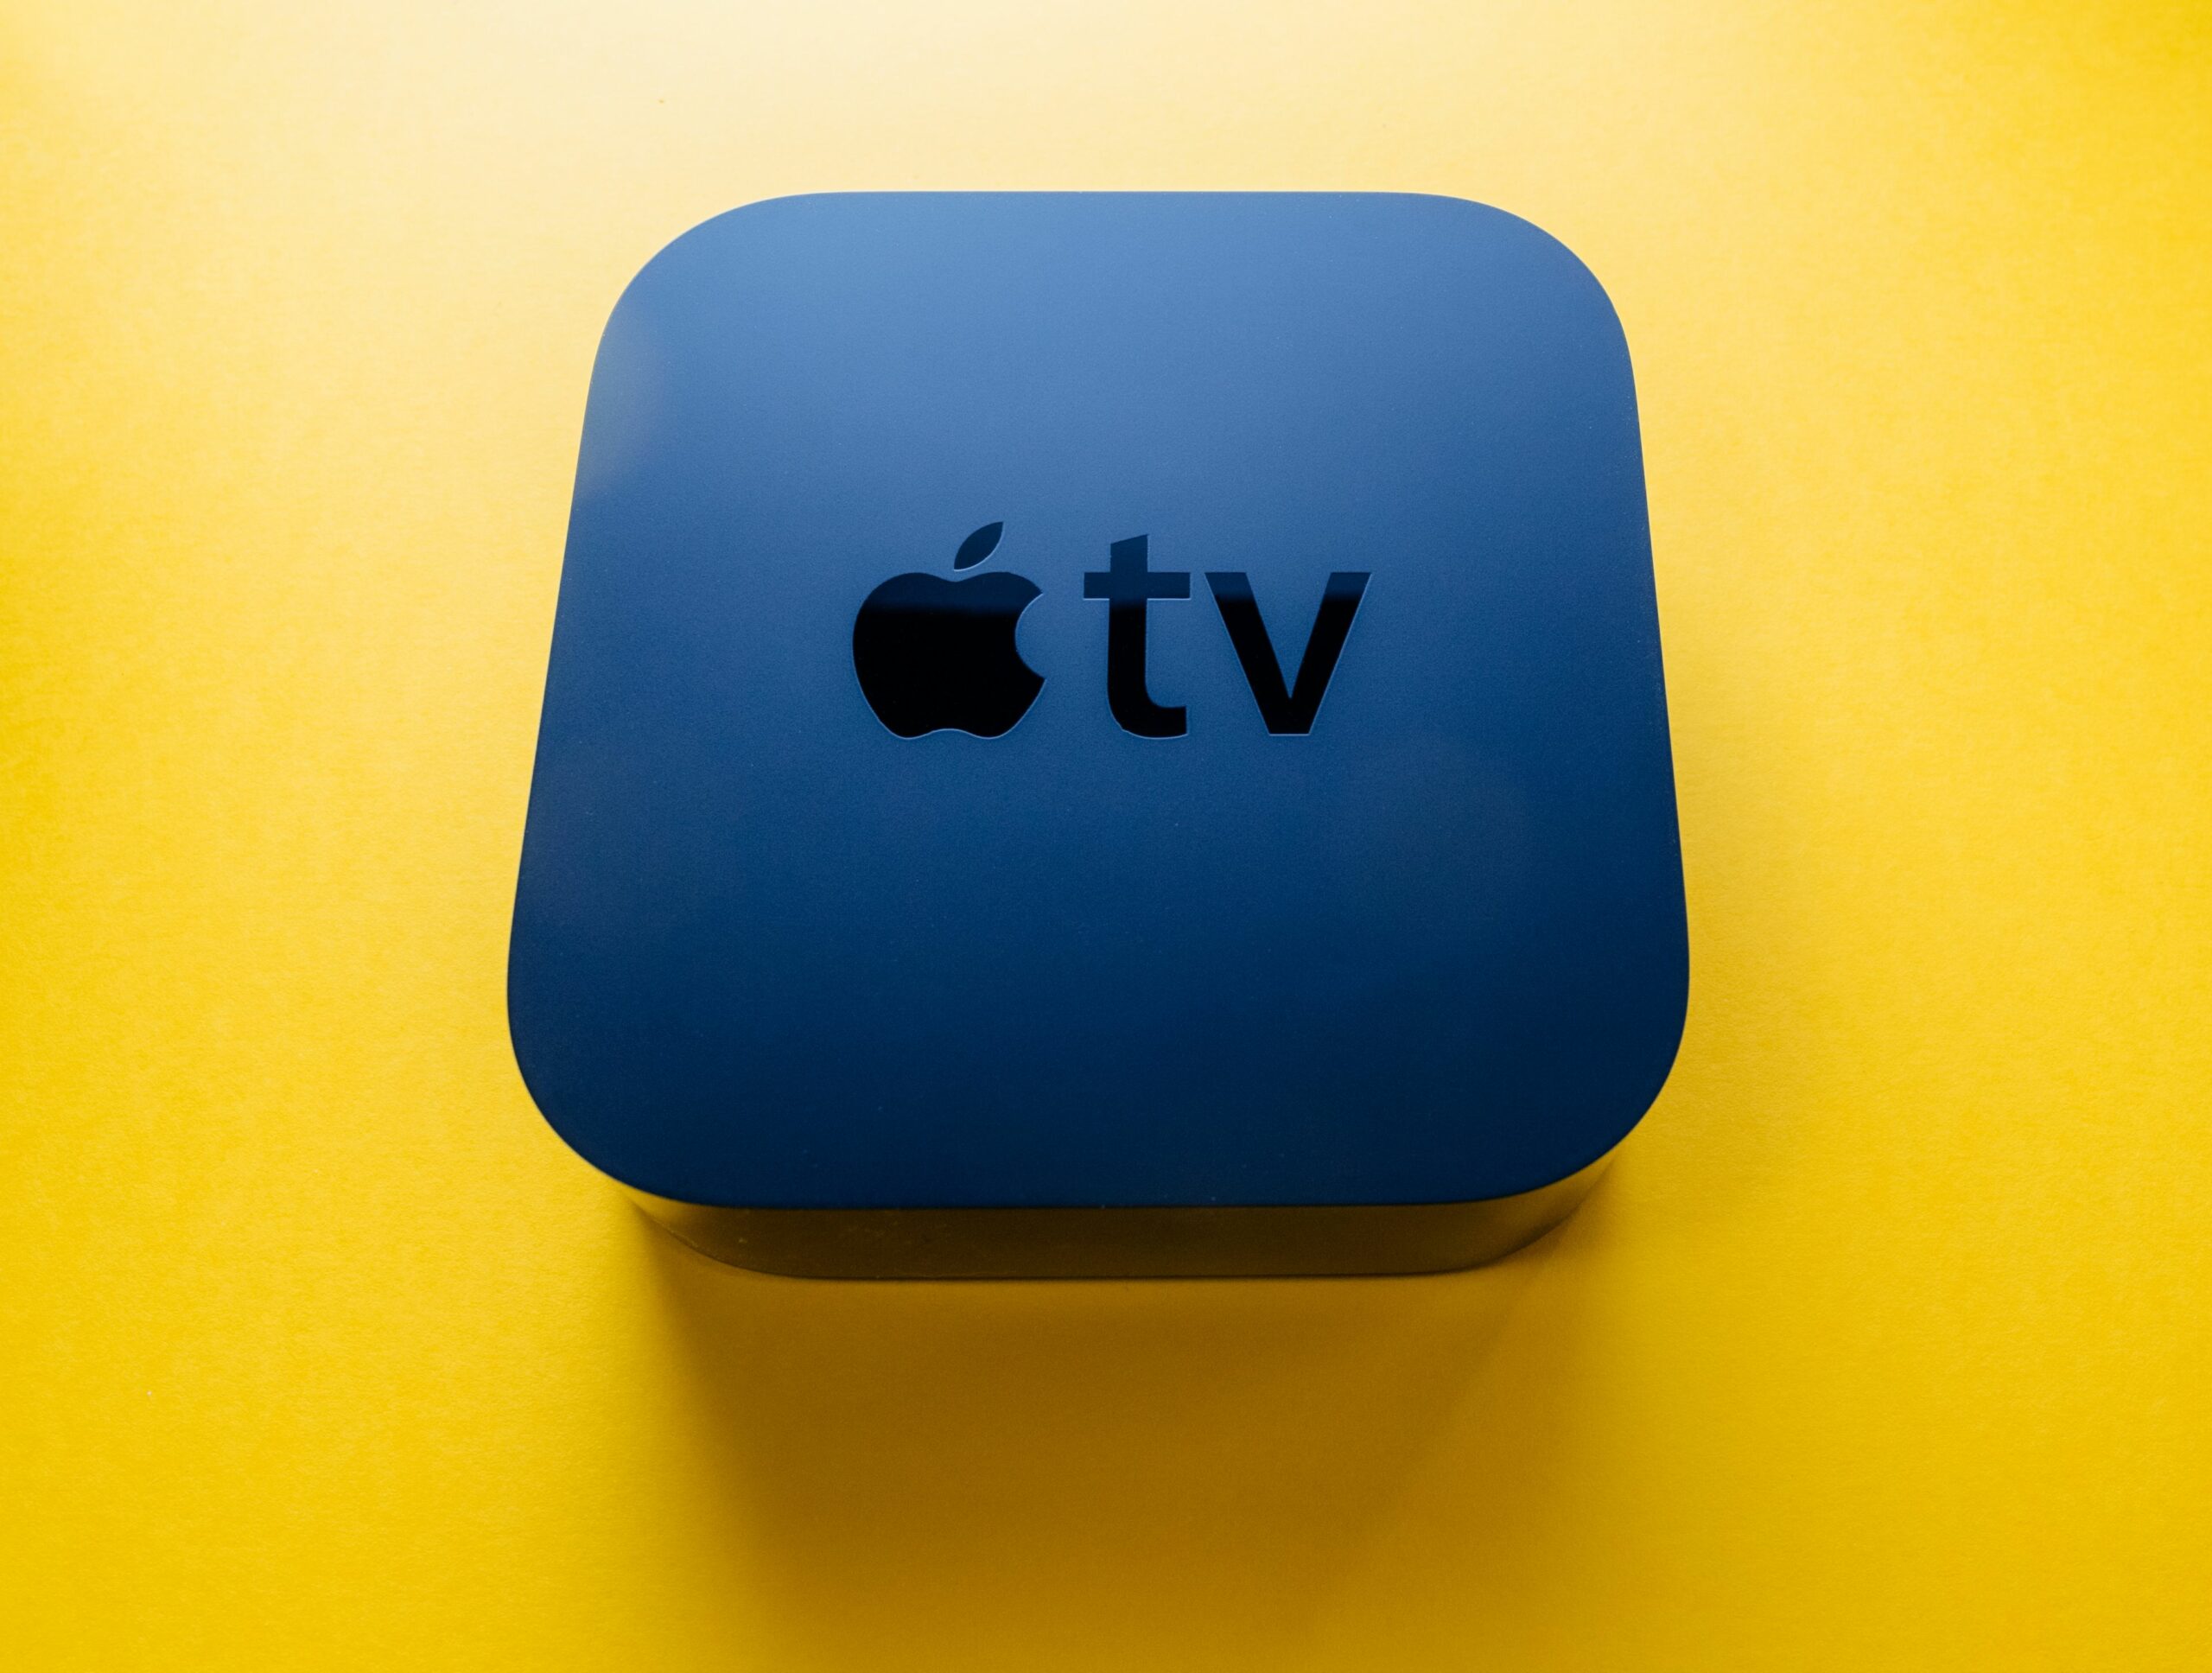 Apple TVn kanssa matkustamisen plussat ja miinukset 2023